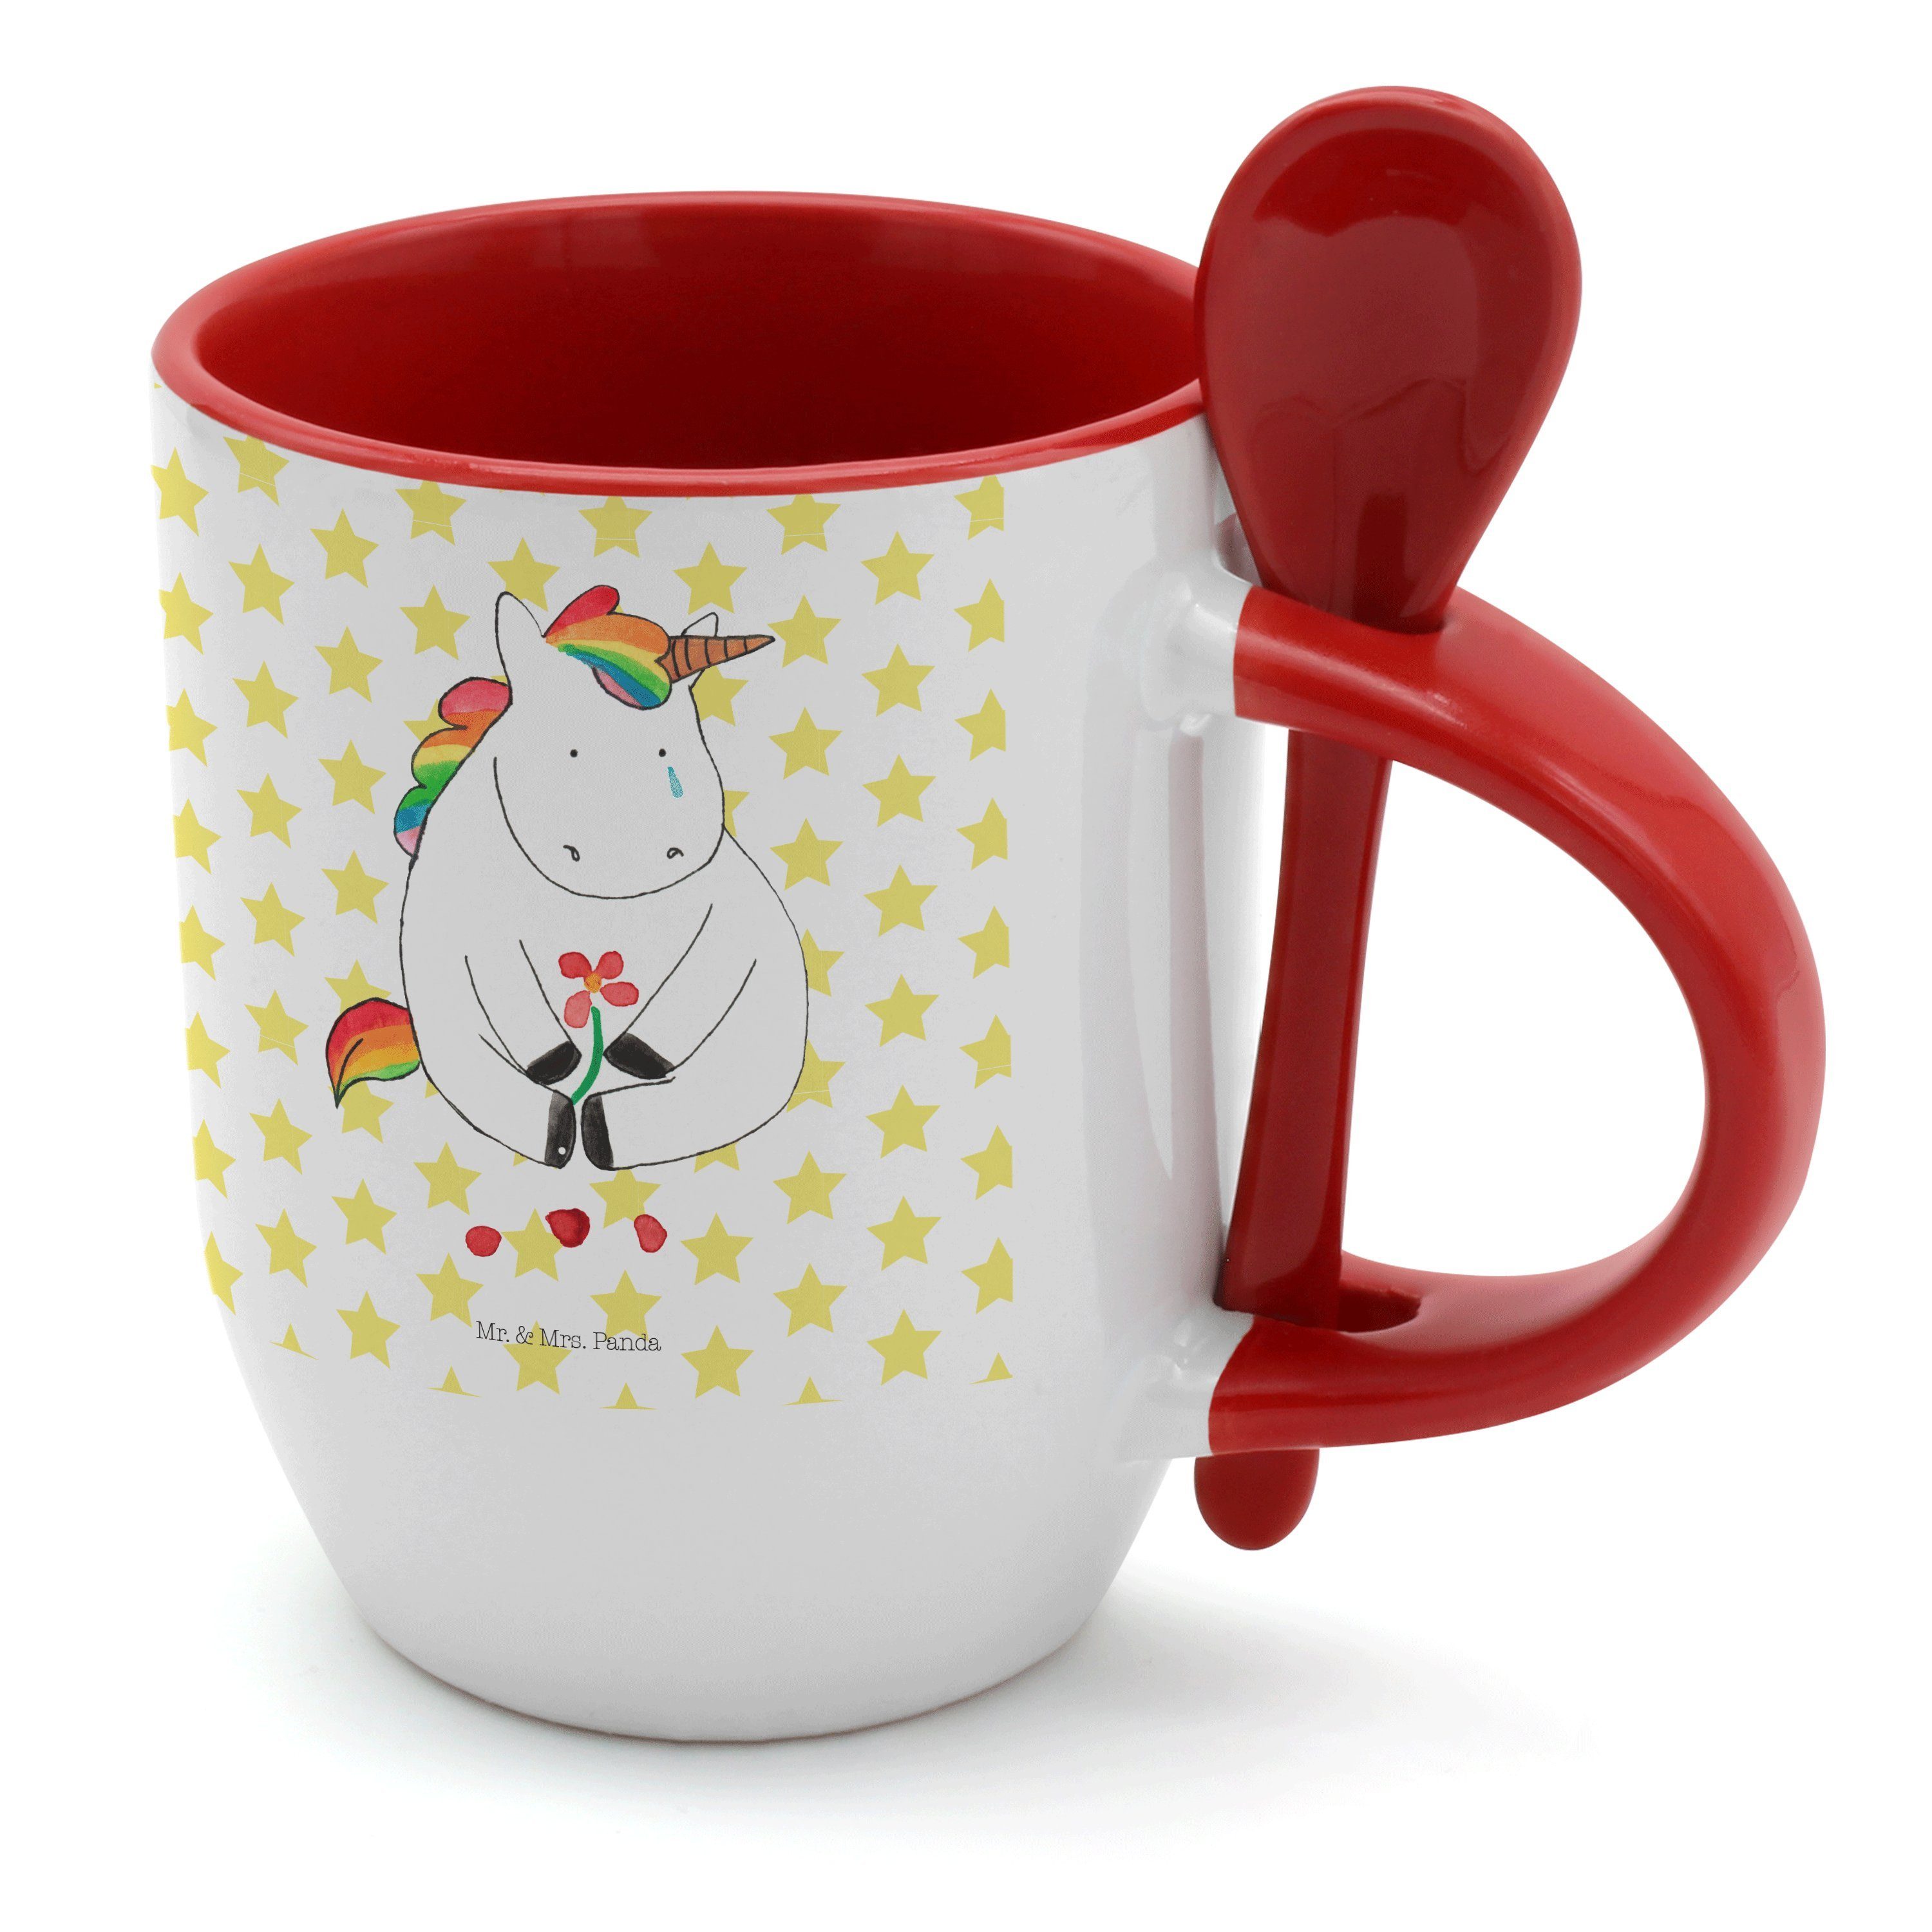 Keramik Kaffe, Traurig - Tassen, Mr. Tasse Weiß - & Trauer, Geschenk, Mrs. Kaffeetasse, Einhorn Panda